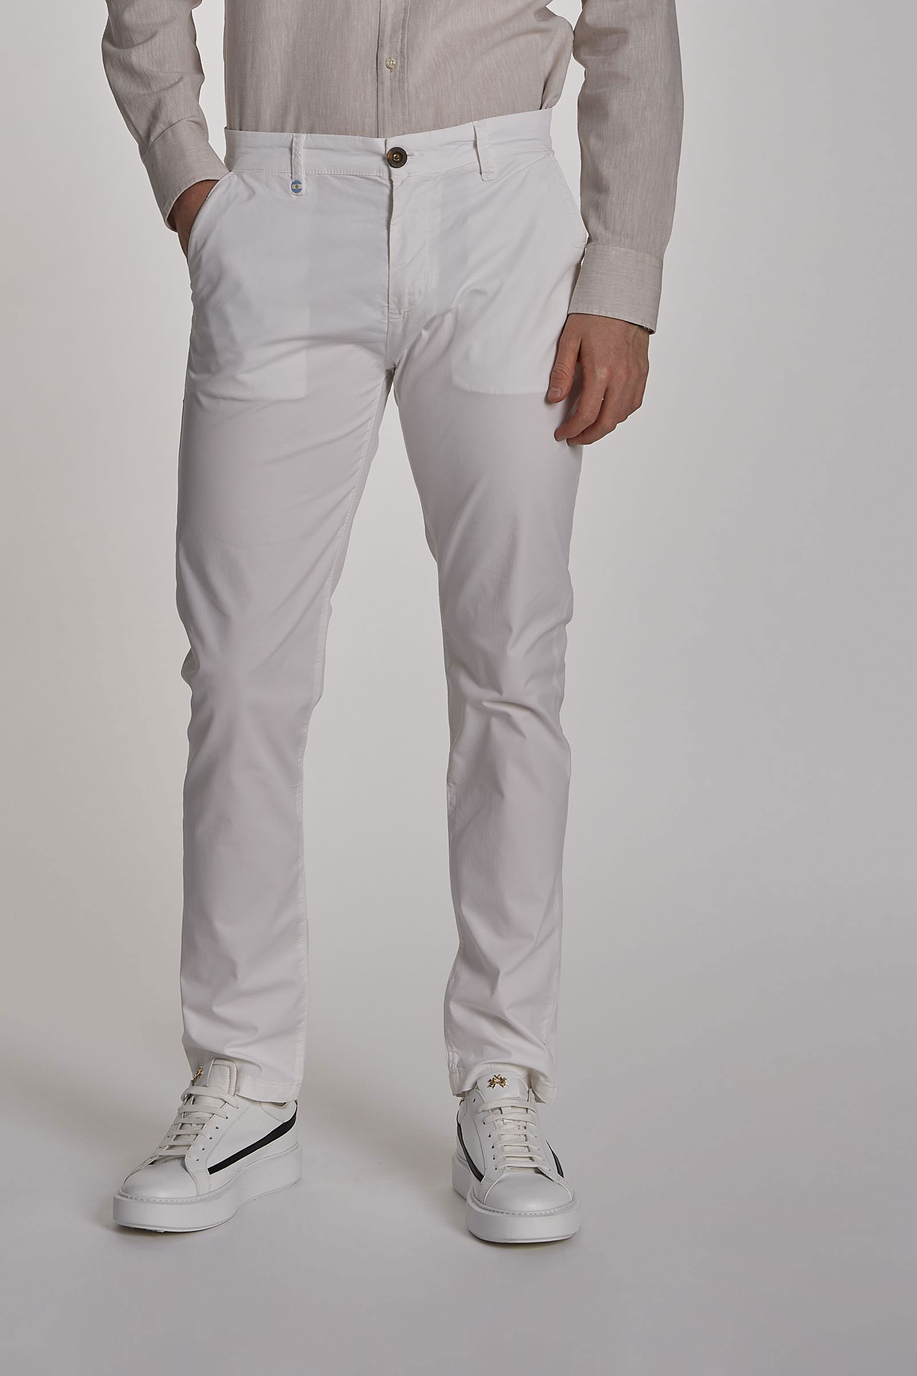 Pantalón de hombre modelo chino de algodón elástico, corte slim | La Martina - Official Online Shop